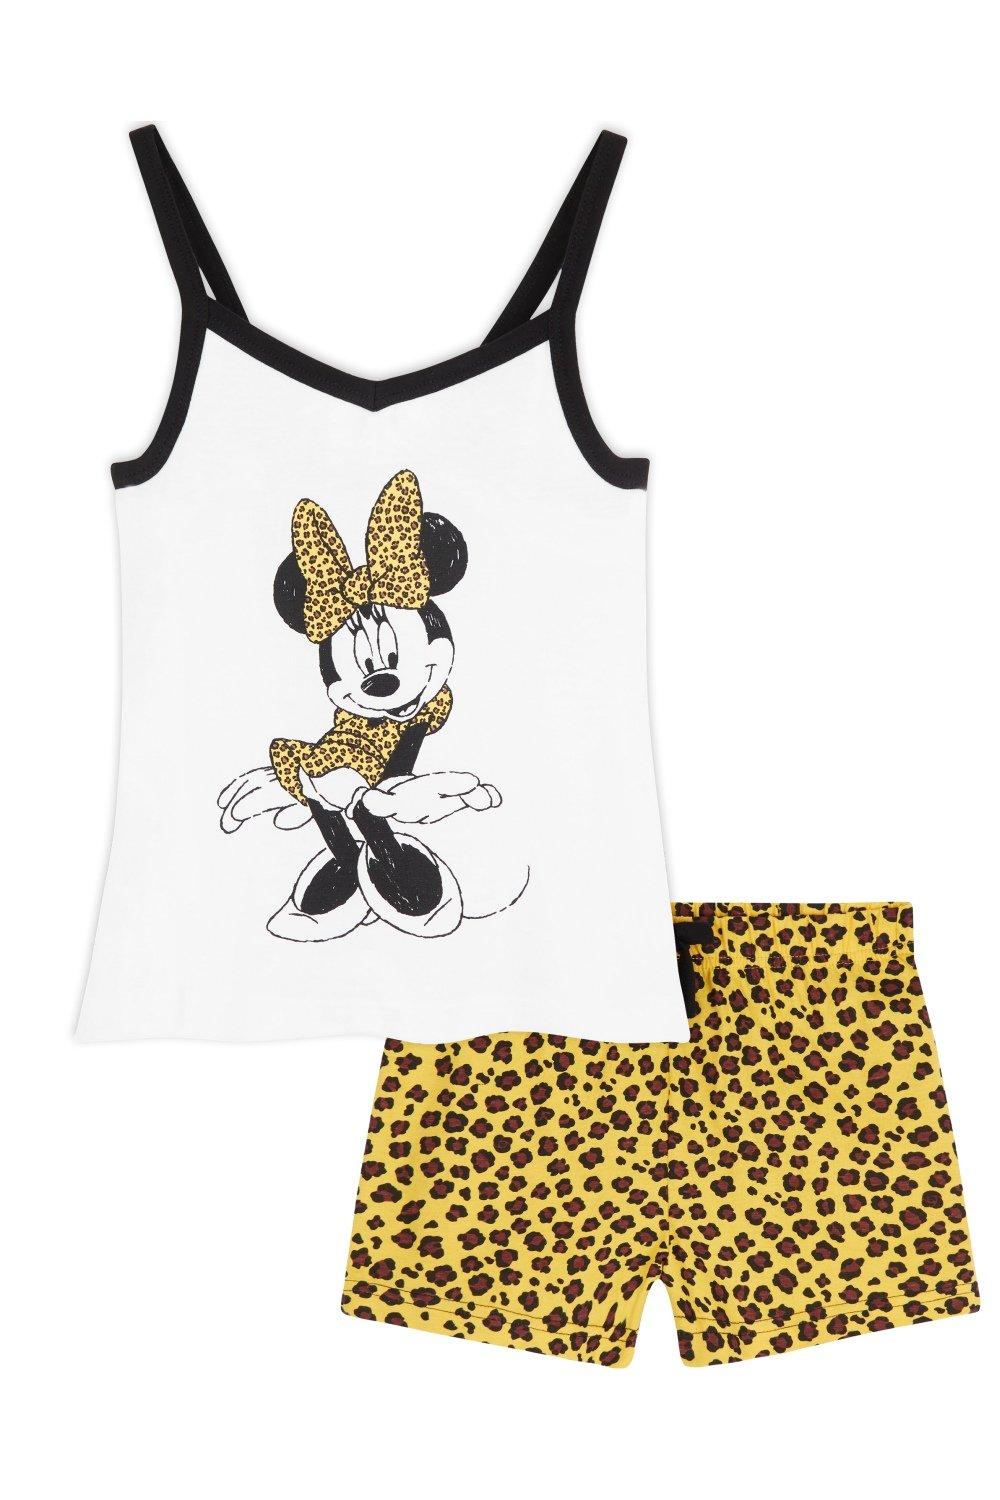 Короткий пижамный комплект с Минни Маус Disney, мультиколор фотографии